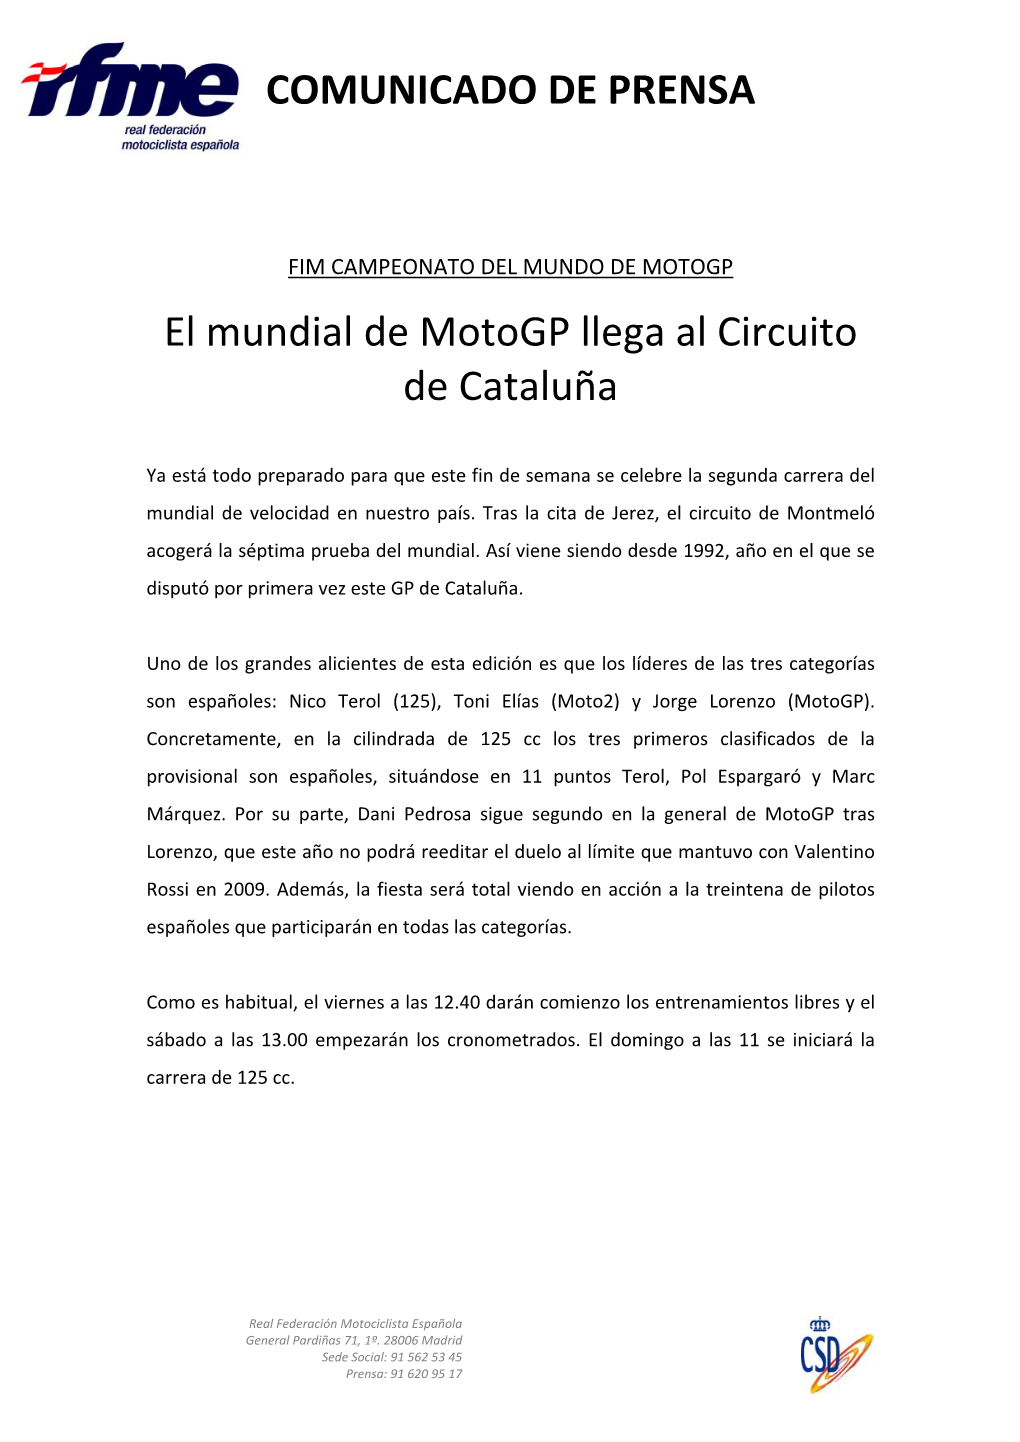 El Mundial De Motogp Llega Al Circuito De Cataluña